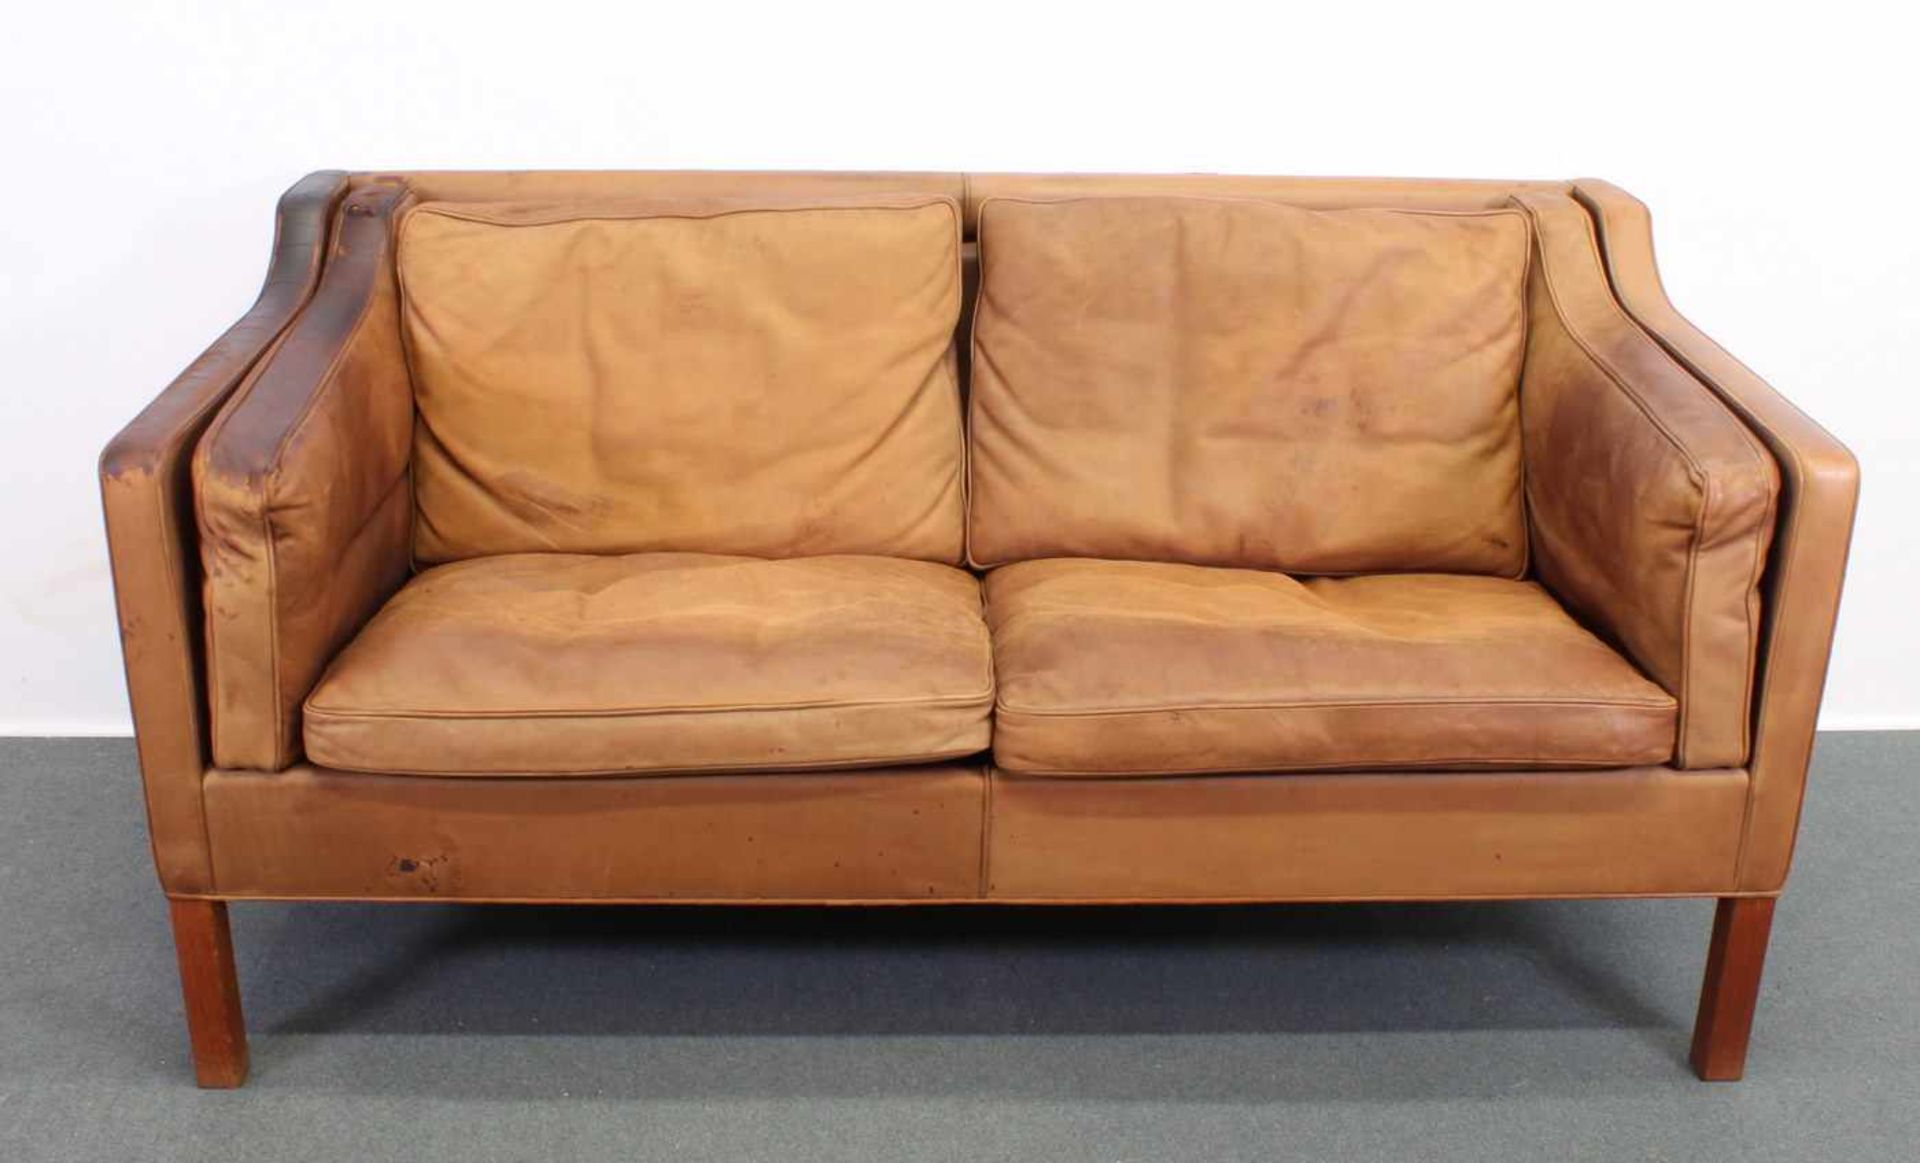 Zweisitzer-Sofa, Design Børge Mogensen (1914-1972), Dänemark, 2. Hälfte 20. Jh., Herstellung